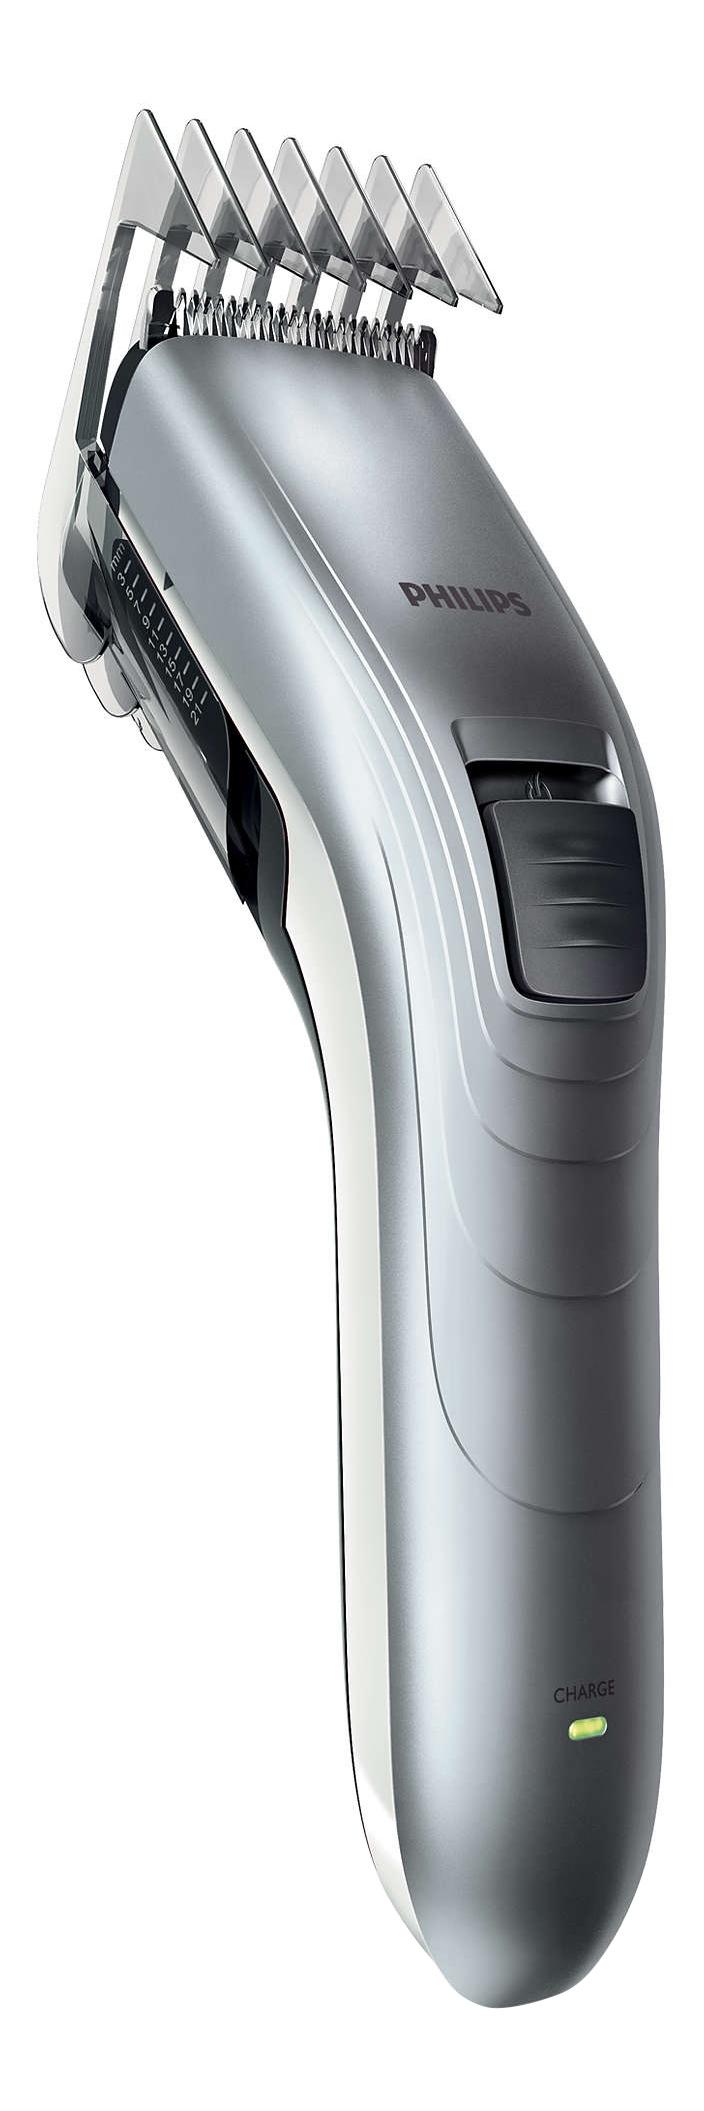 Машинка для стрижки волос Philips Series 3000 QC5130/ 15 машинка для стрижки волос philips hc5630 серый